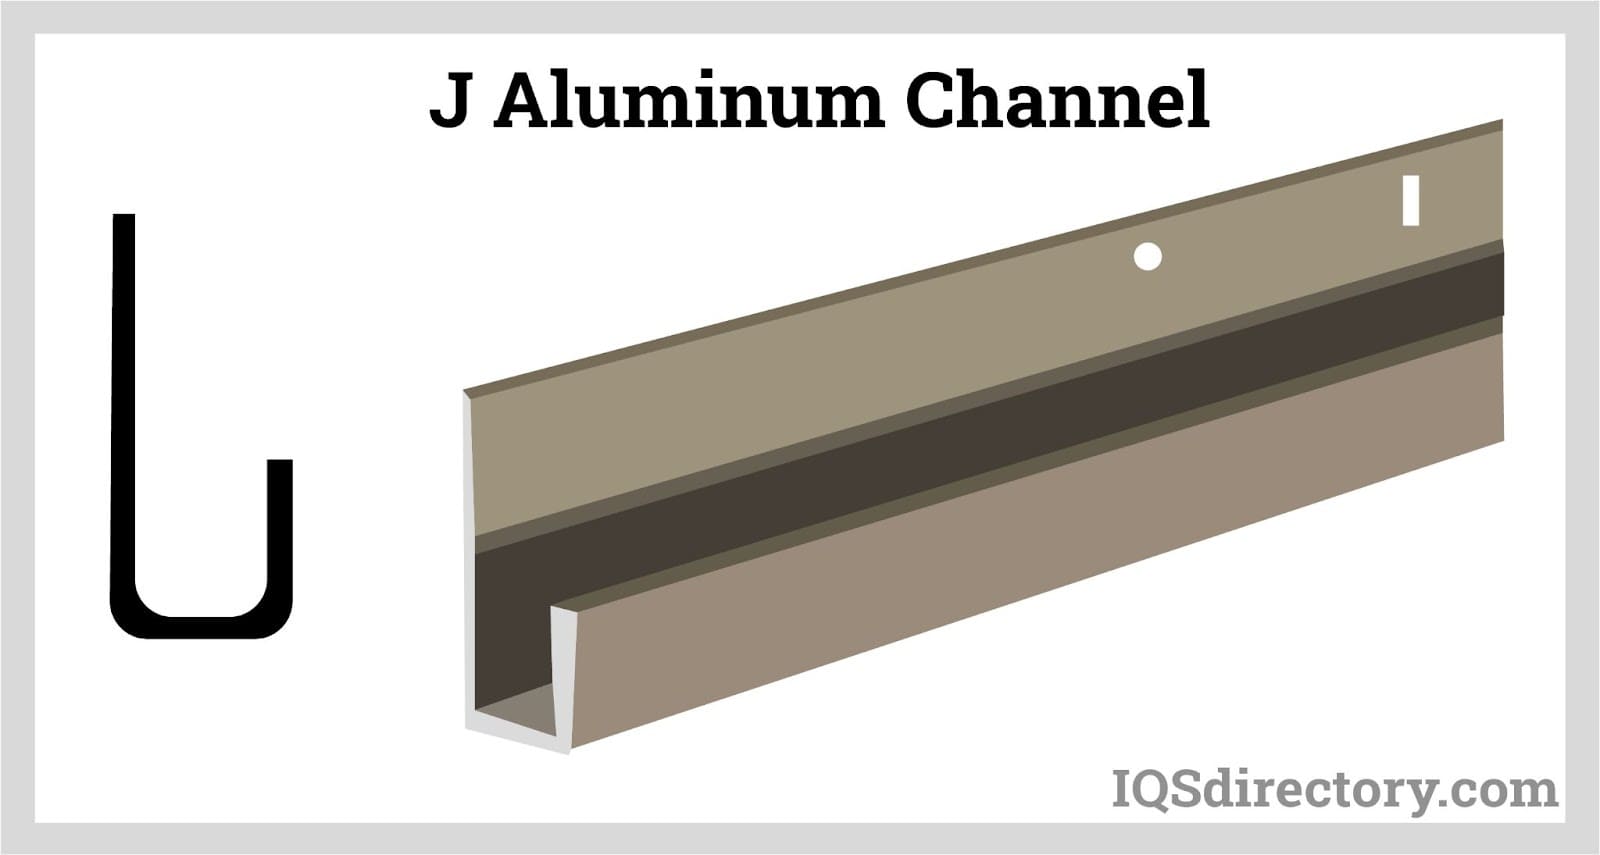 https://www.iqsdirectory.com/articles/aluminum-extrusion/aluminum-channels/j-aluminum-channel.jpg